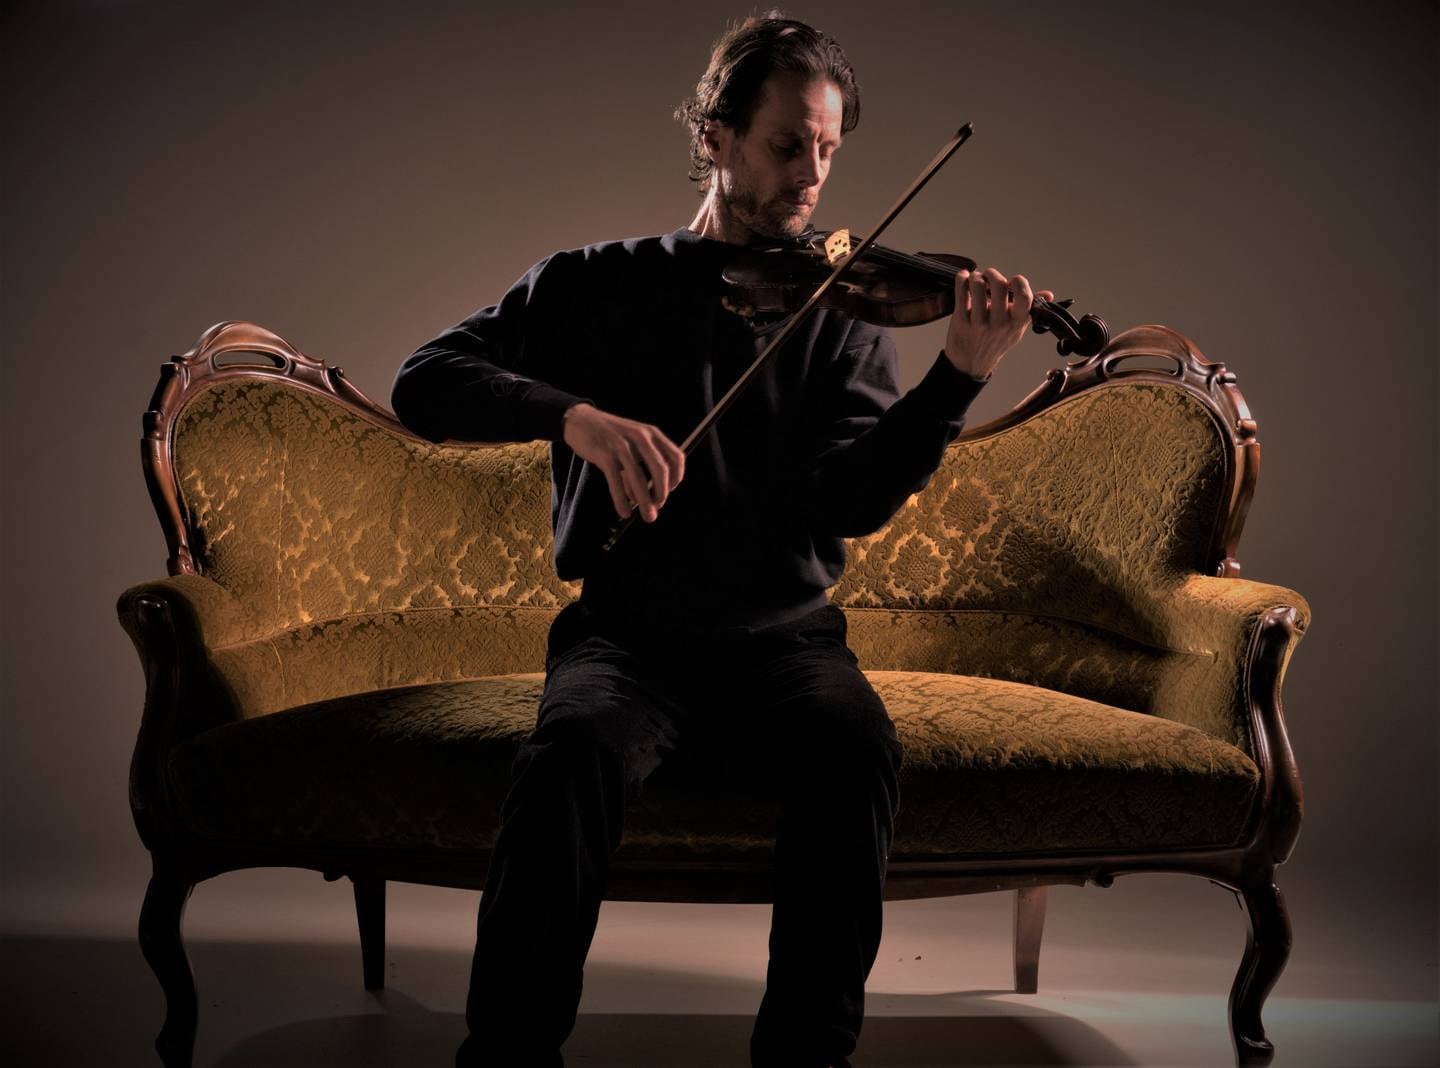 Christian Stejskal, en norsk violinist, har turnerat runt i kyrkor i Skandinavien med sin föreställning “Markusevangeliet” under två års tid.